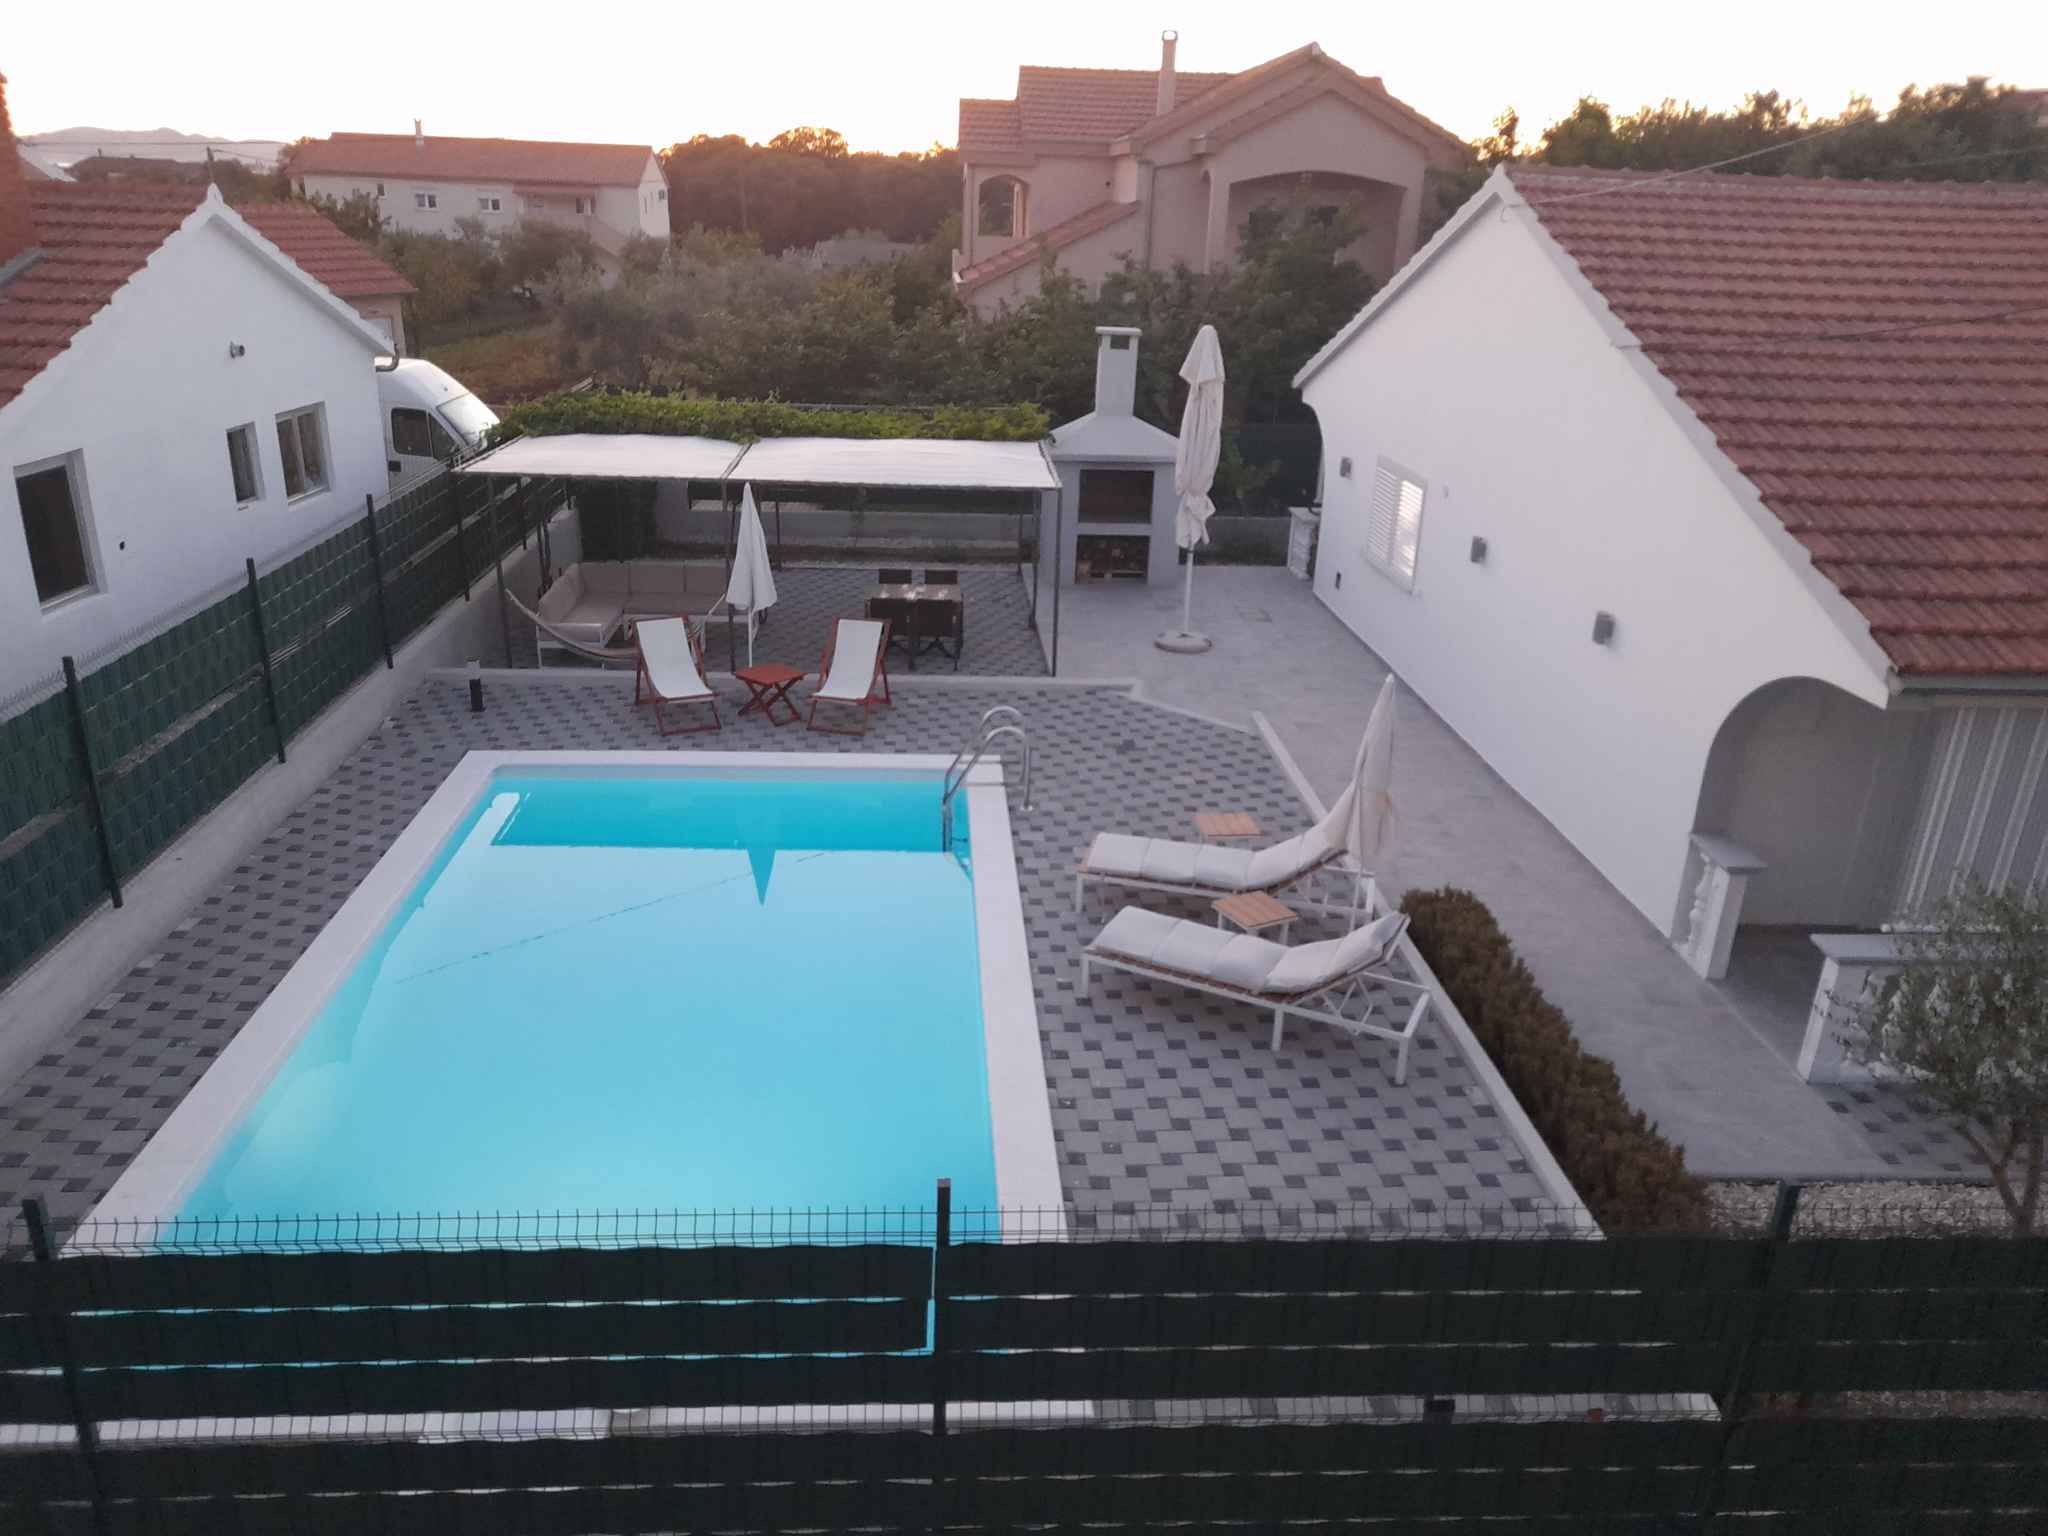 Ferienhaus mit Blick auf den Hof und den Pool Ferienhaus in Kroatien